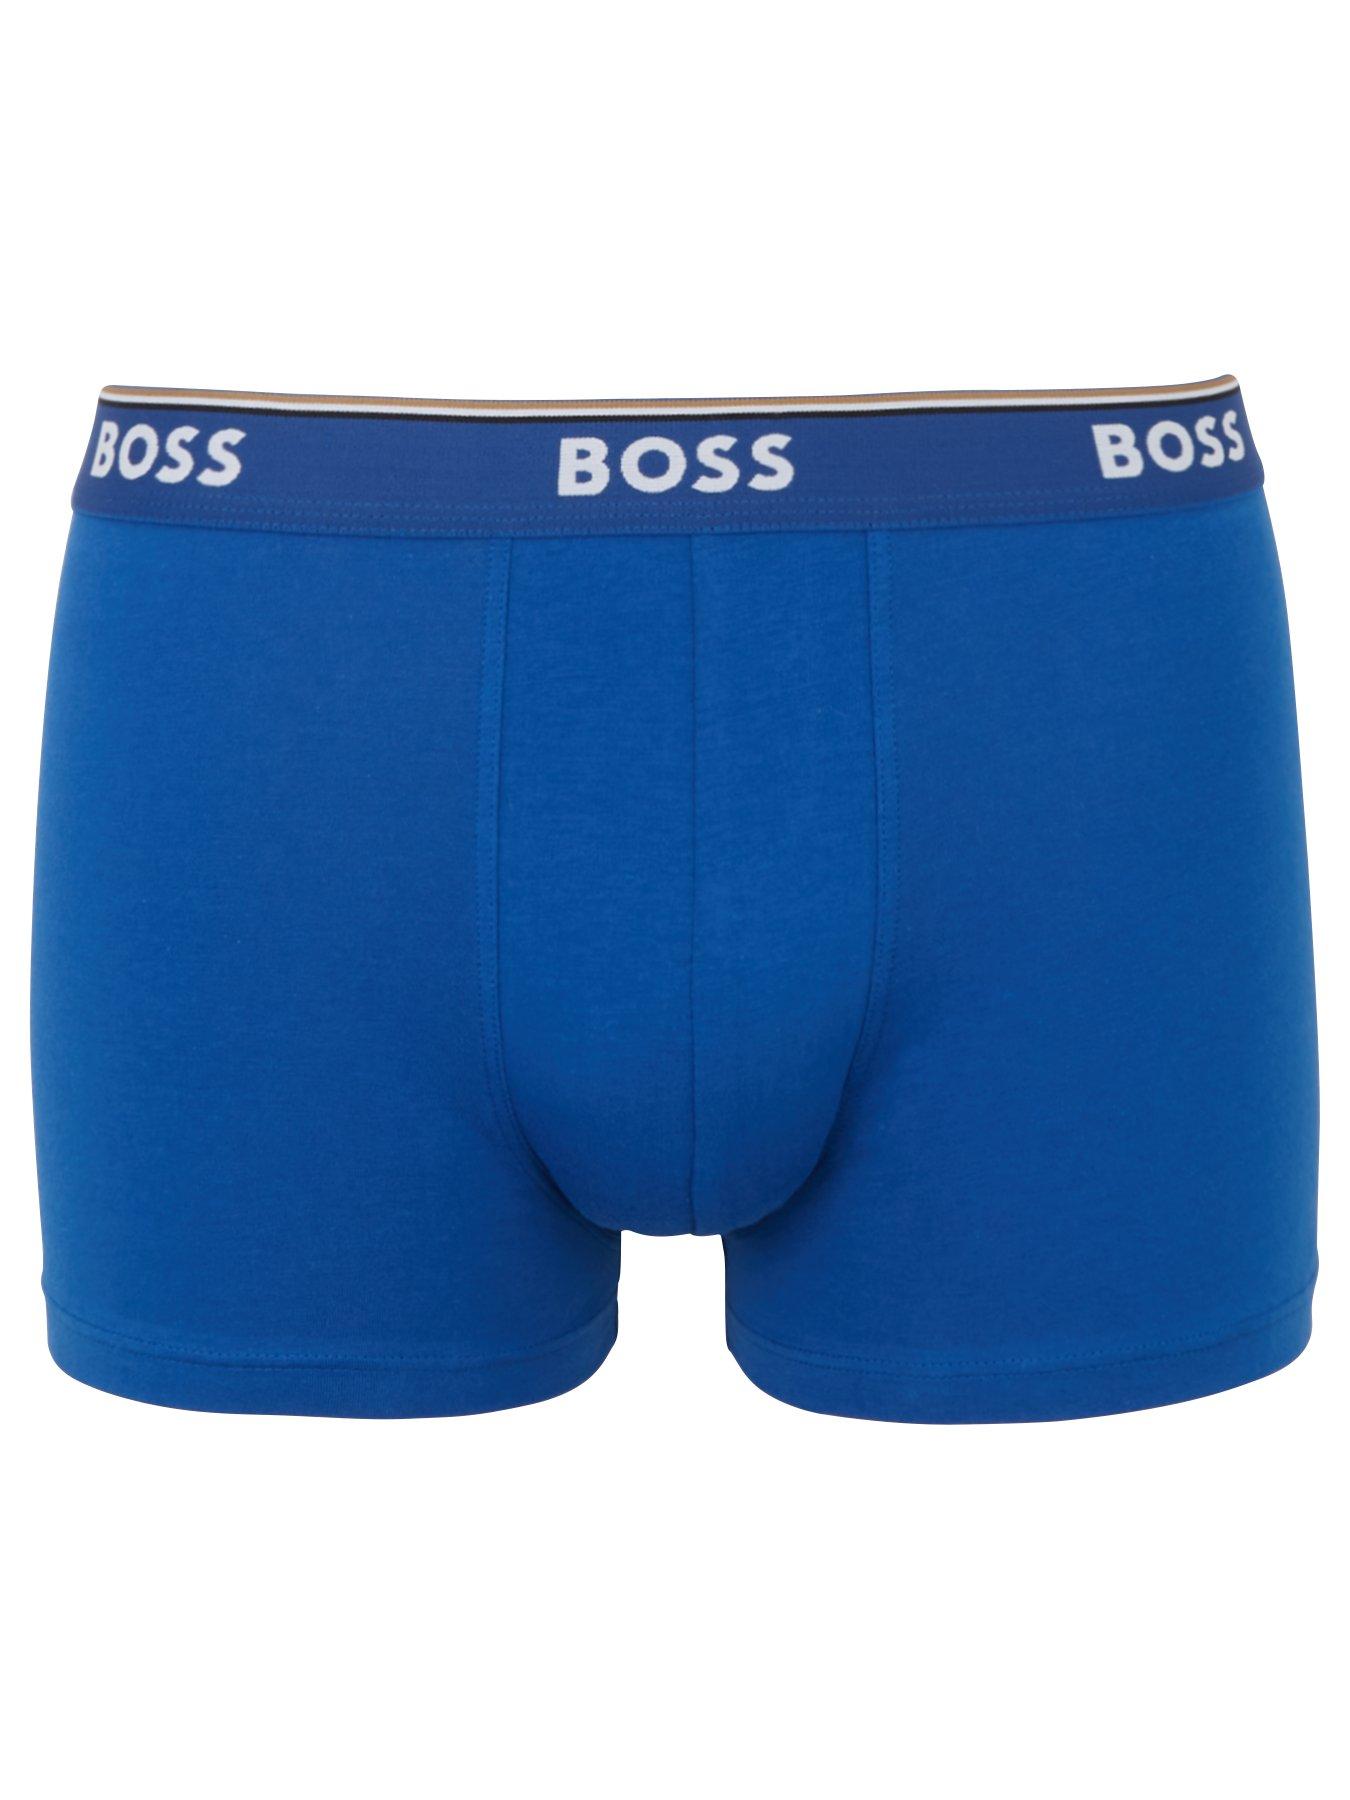 BOSS Bodywear 3 Pack Power Boxer Briefs - Blue | littlewoods.com